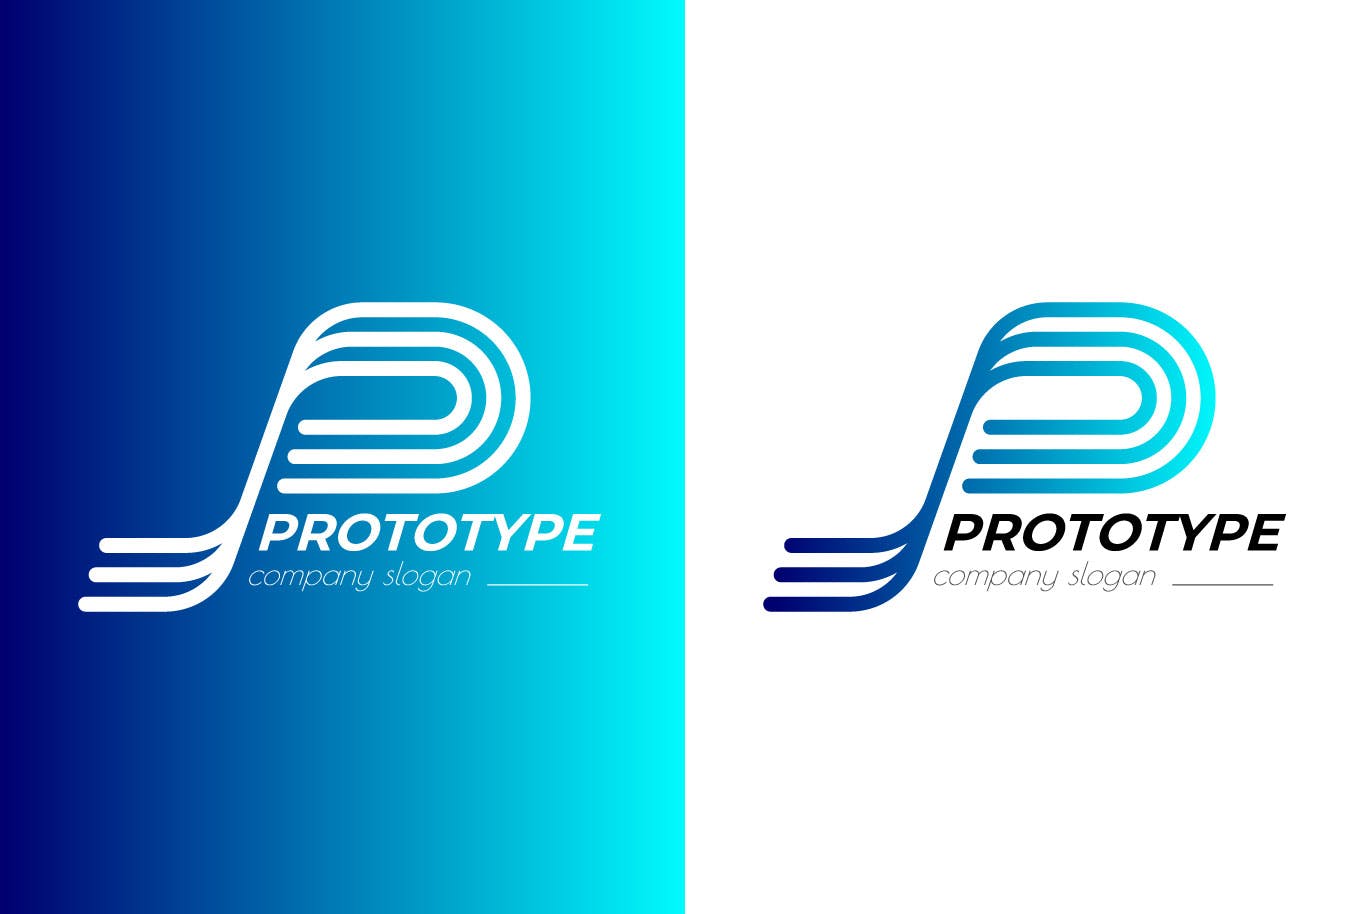 原型设计主题创意图形Logo设计第一素材精选模板 Prototype Creative Logo Template插图(1)